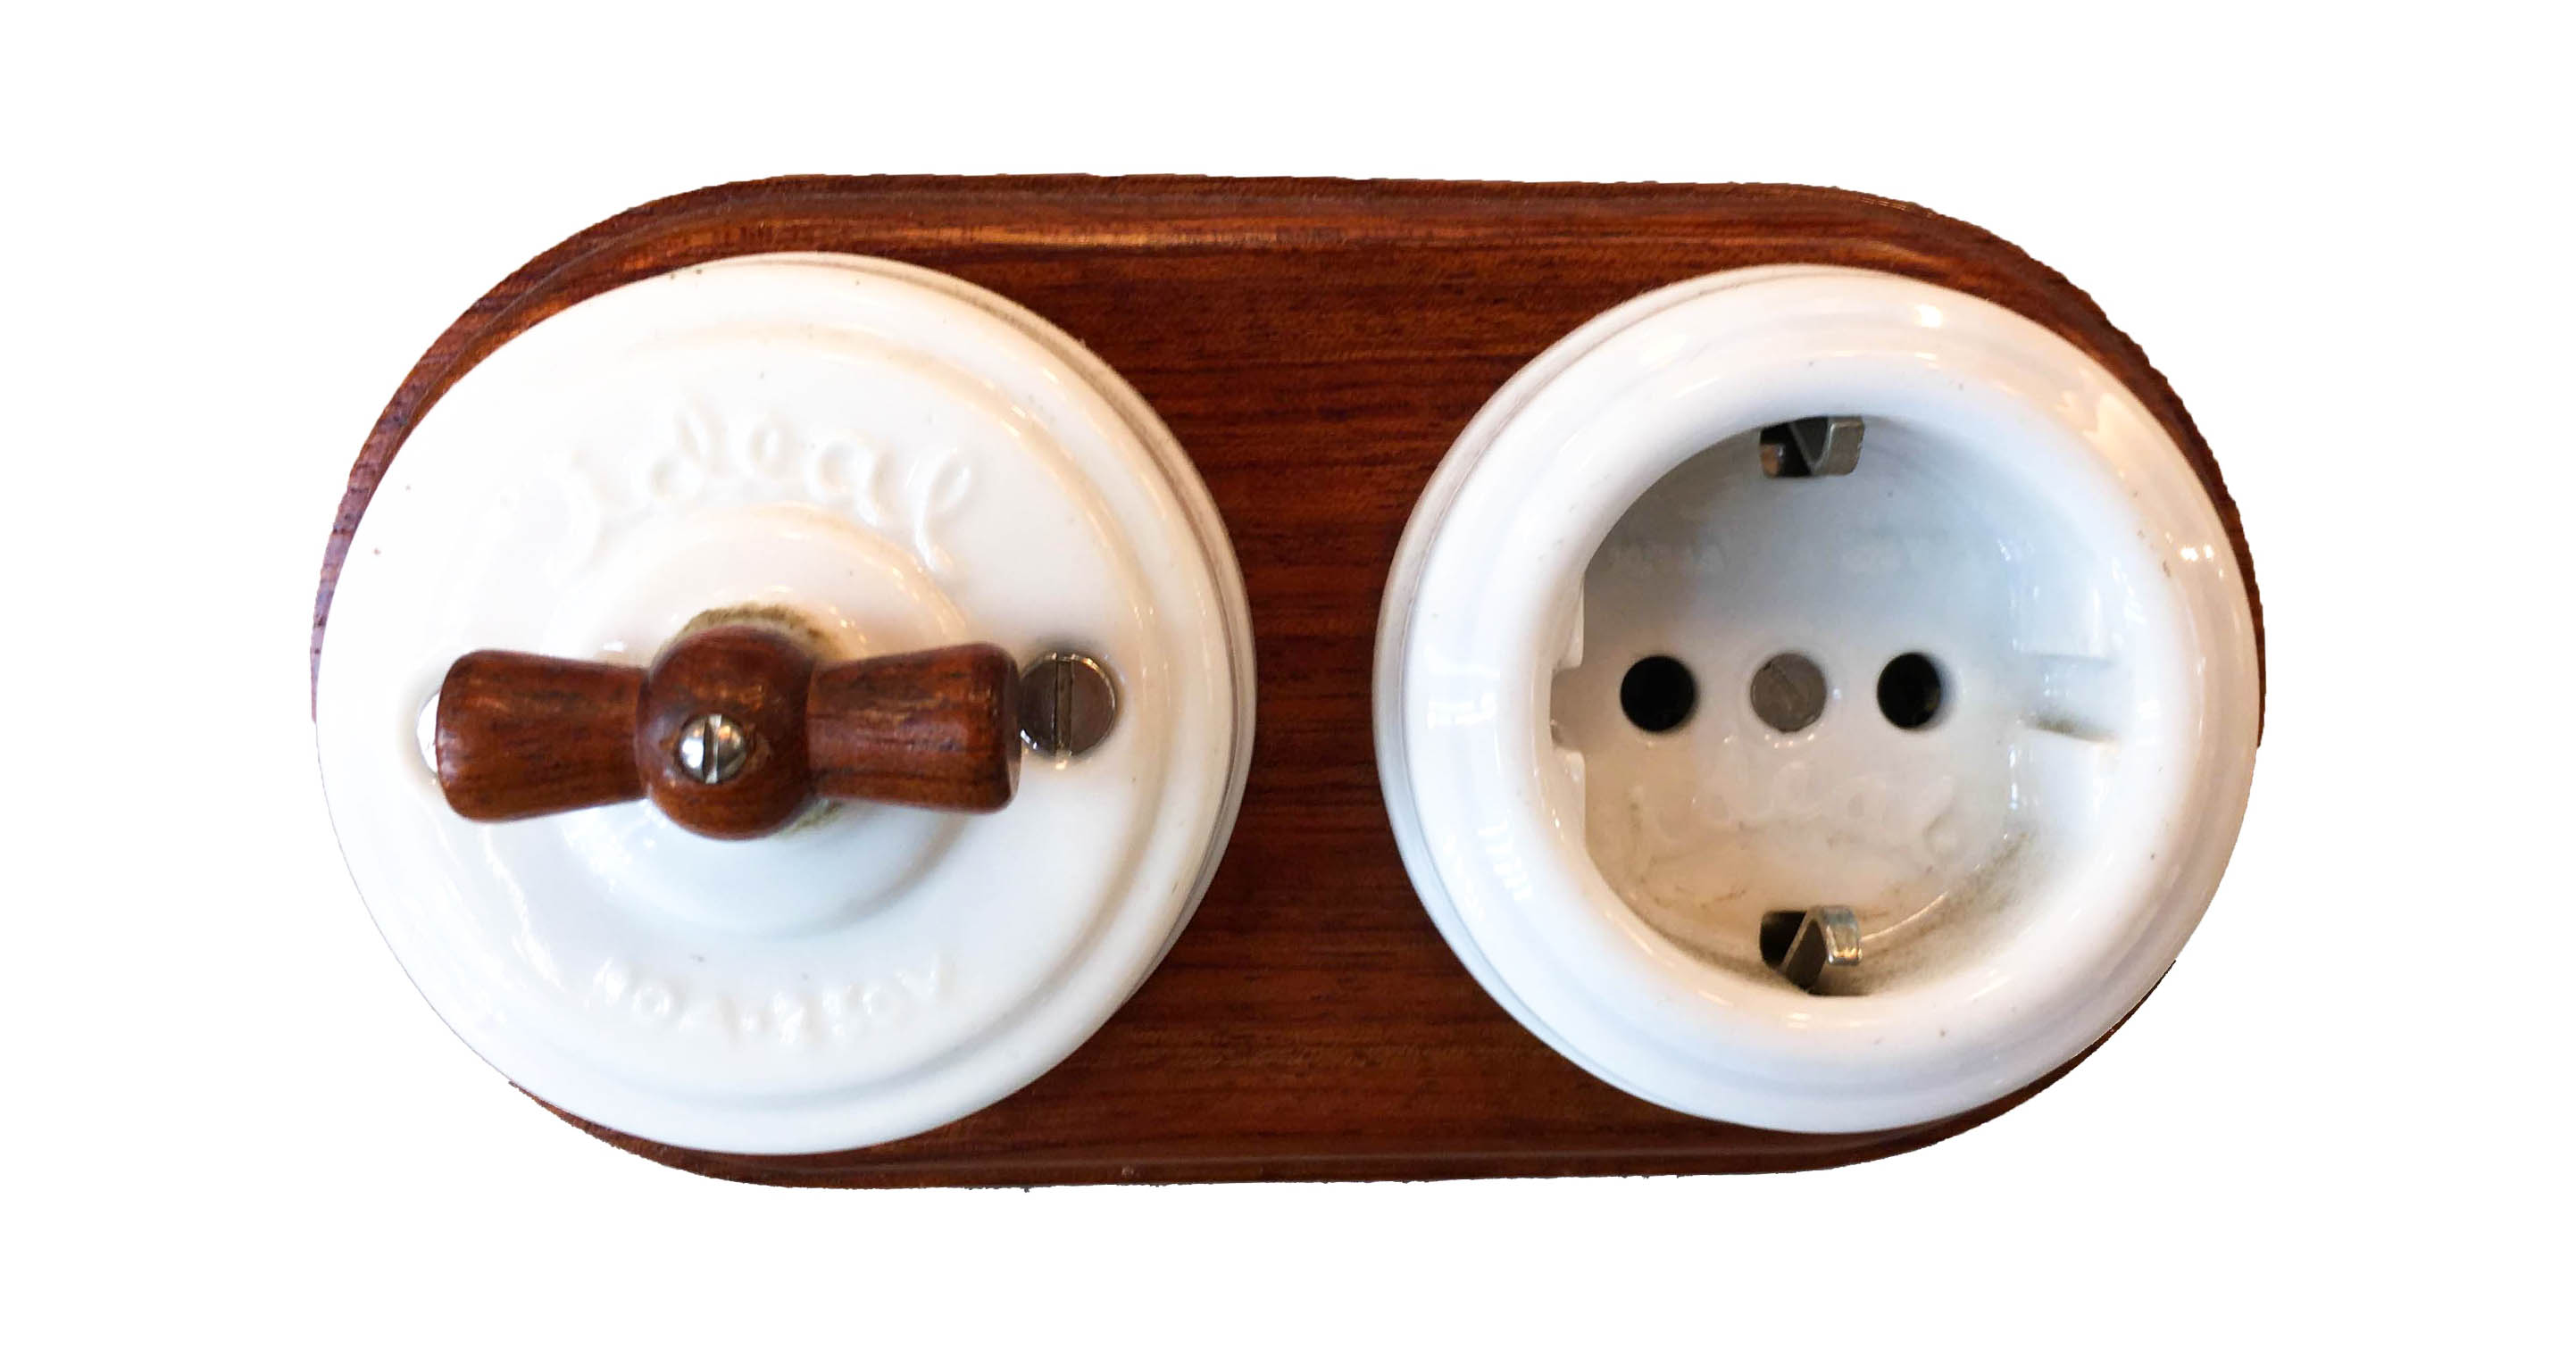 Interruptor de porcelana tipo antiguo